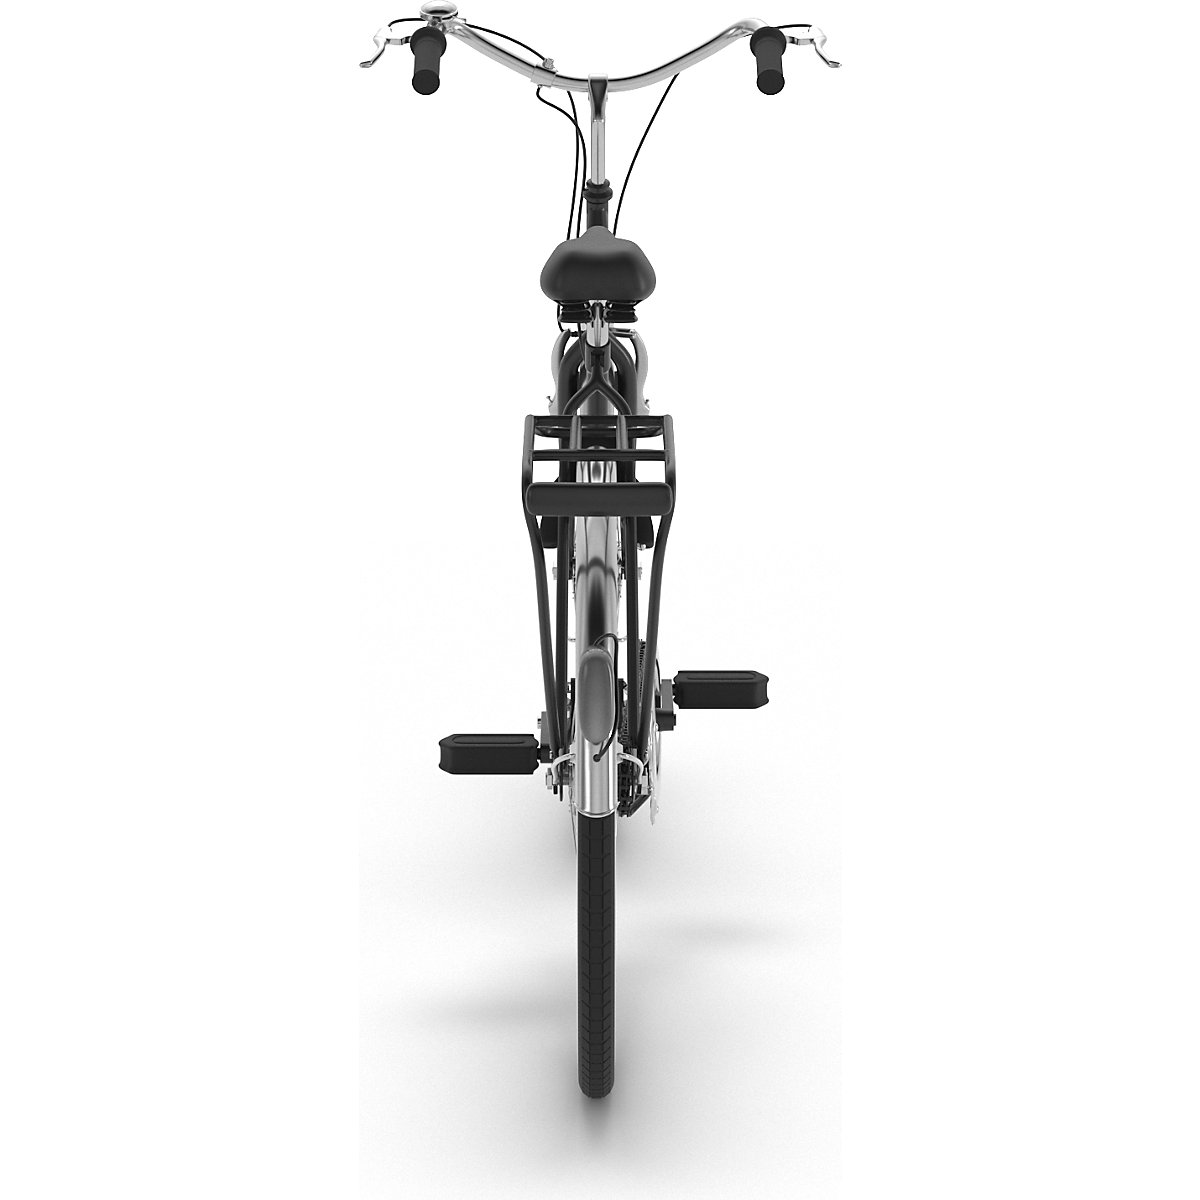 BASIC company bicycle (Product illustration 2)-1